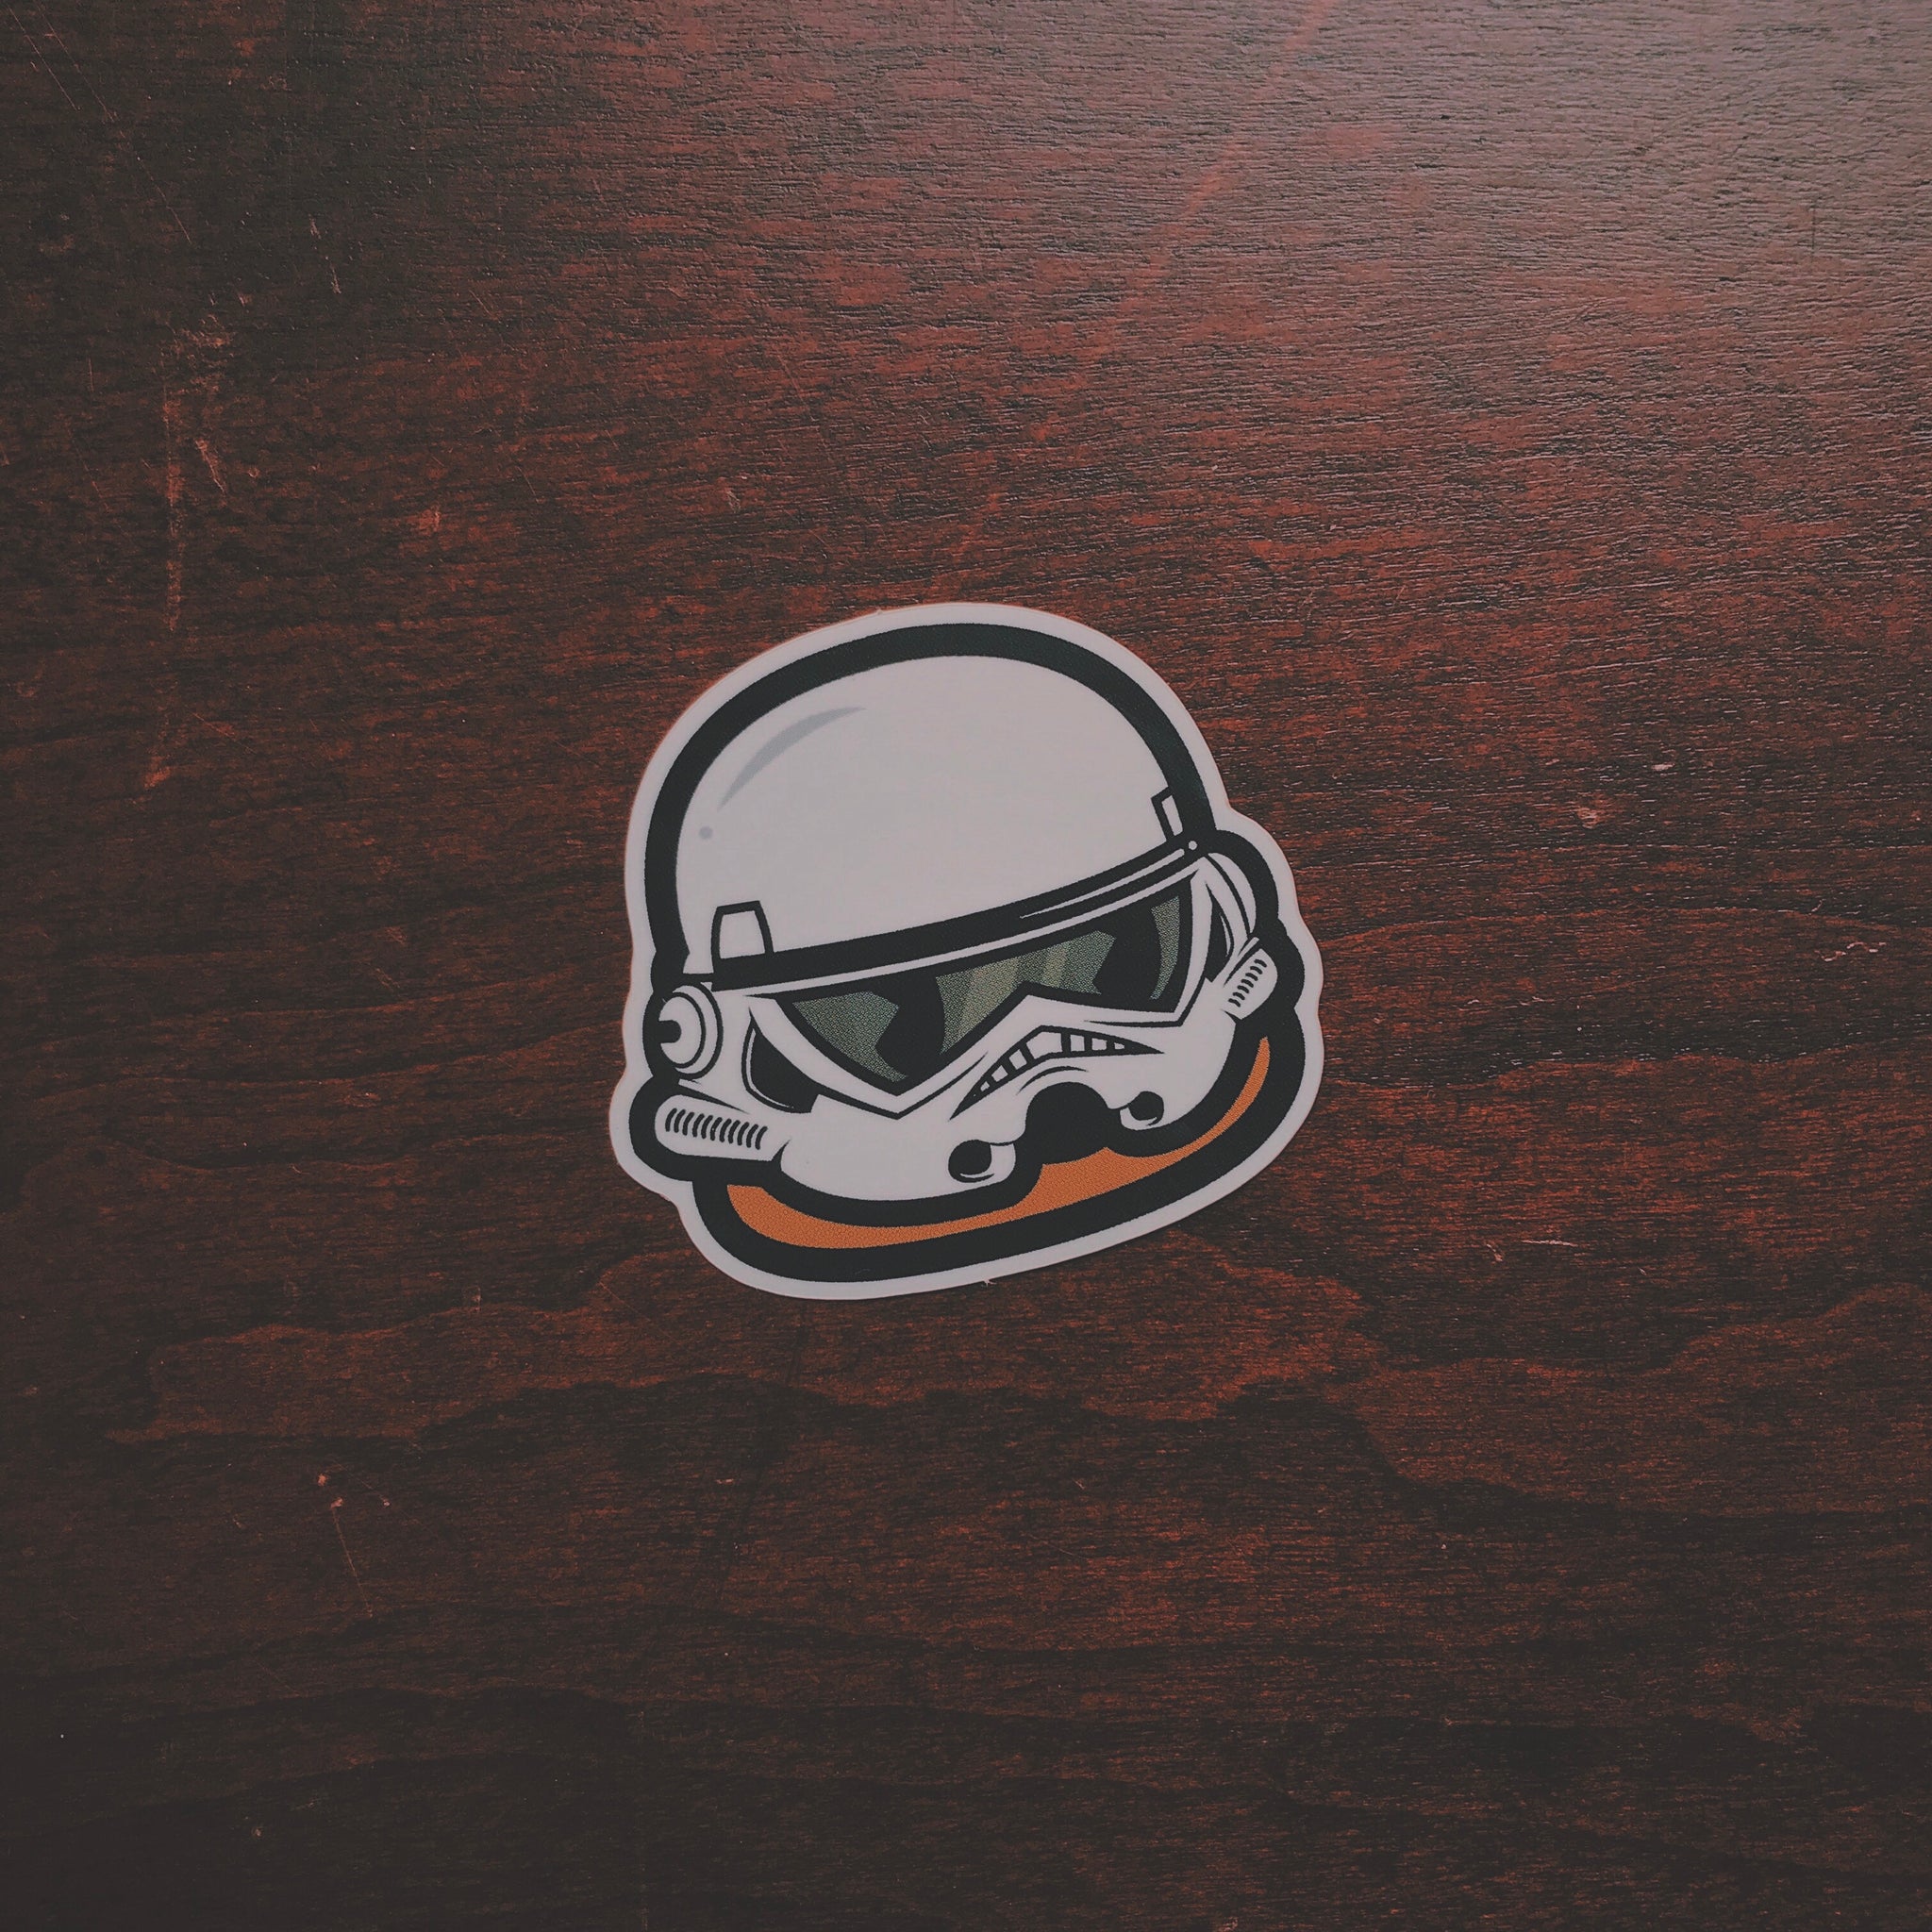 Stormpooper Andre Sticker